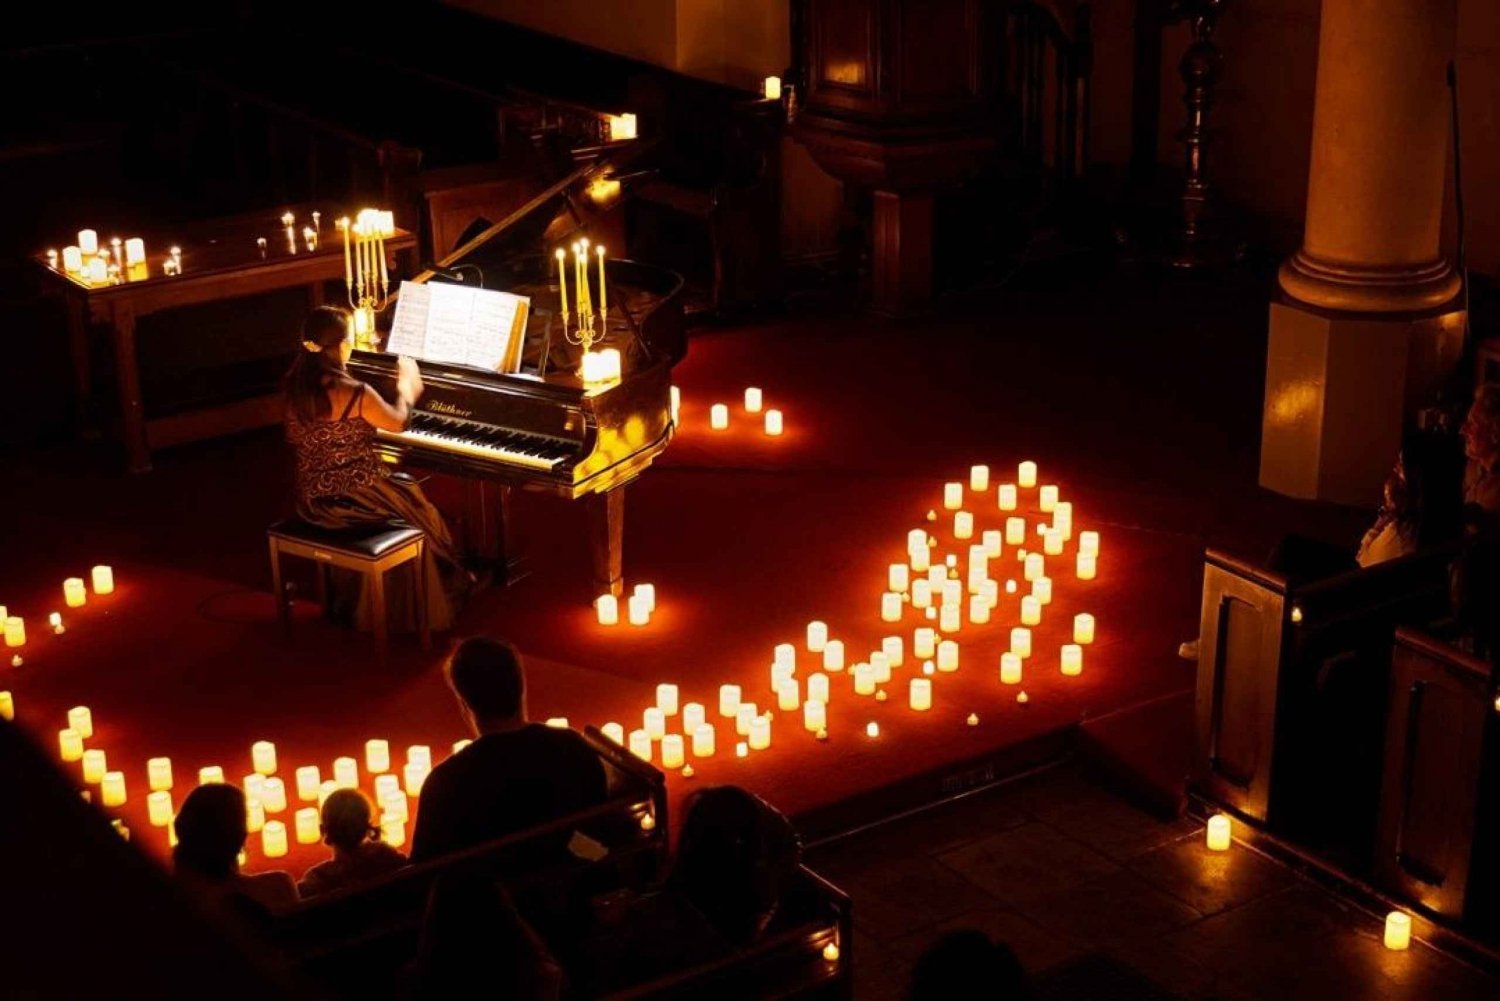 Londres: Ingresso para um concerto à luz de velas com um copo de Prosecco